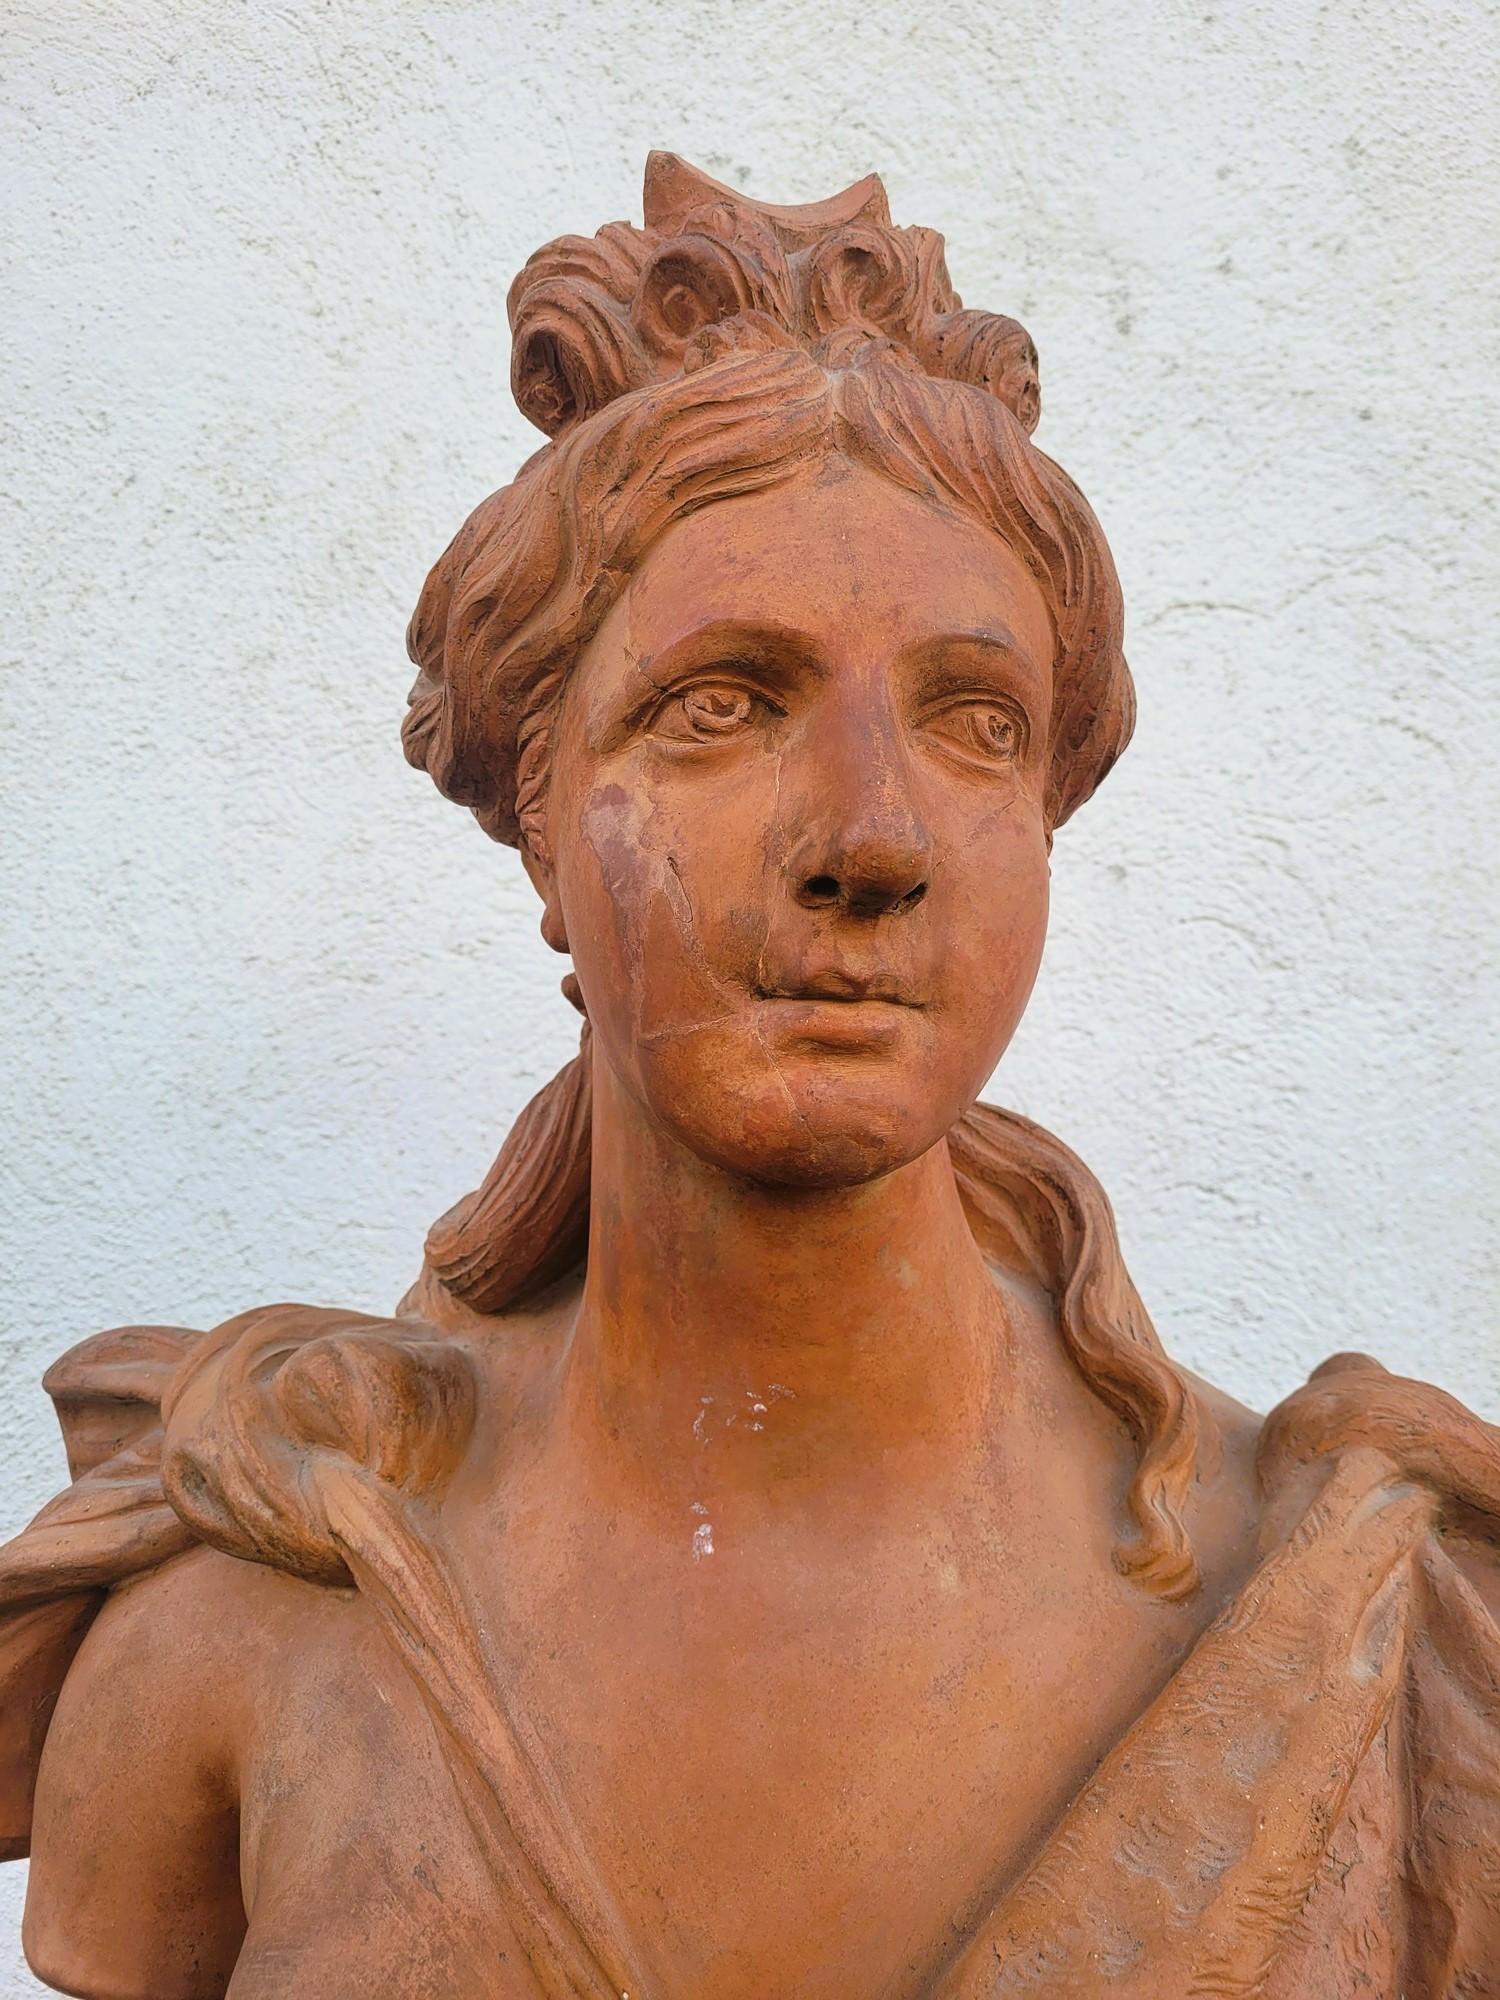 Paire de grands bustes en terre cuite représentant Apollo, couronné de laurier, et Diane, le front entouré d'un croissant de lune, d'époque Louis XVI.

Ces bustes sont présentés sur des colonnes à décor végétal, postérieur

Usures et éclats ; l'une